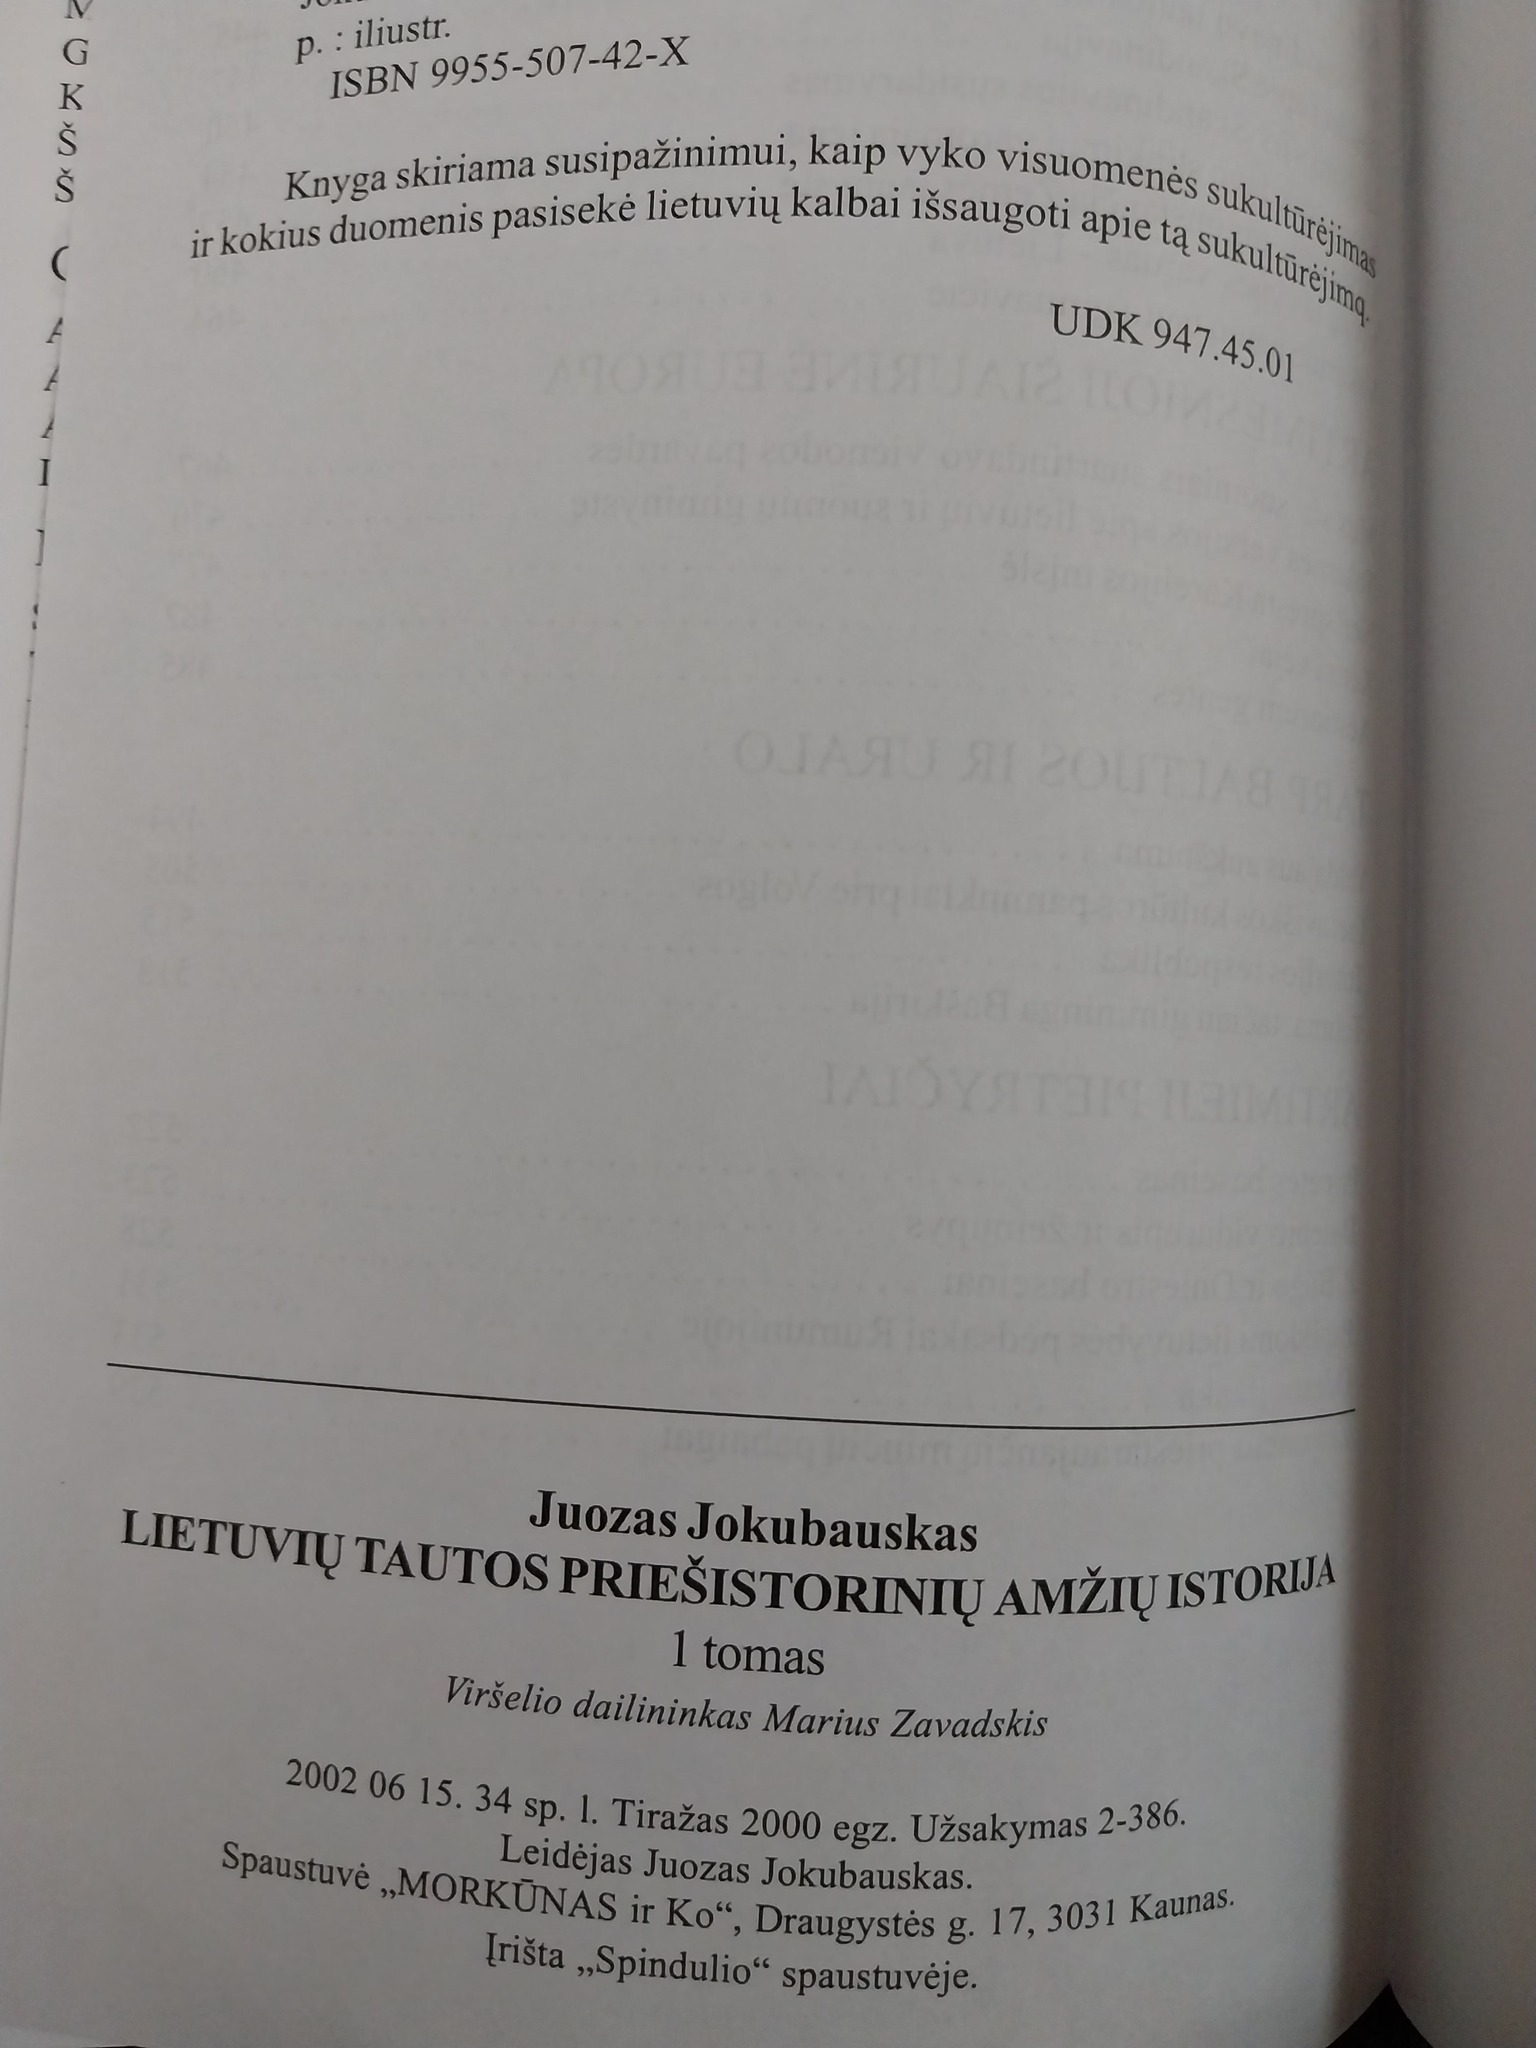 Juozas Jokubauskas. Lietuvių tautos priešistorinių amžių istorija 6.jpg